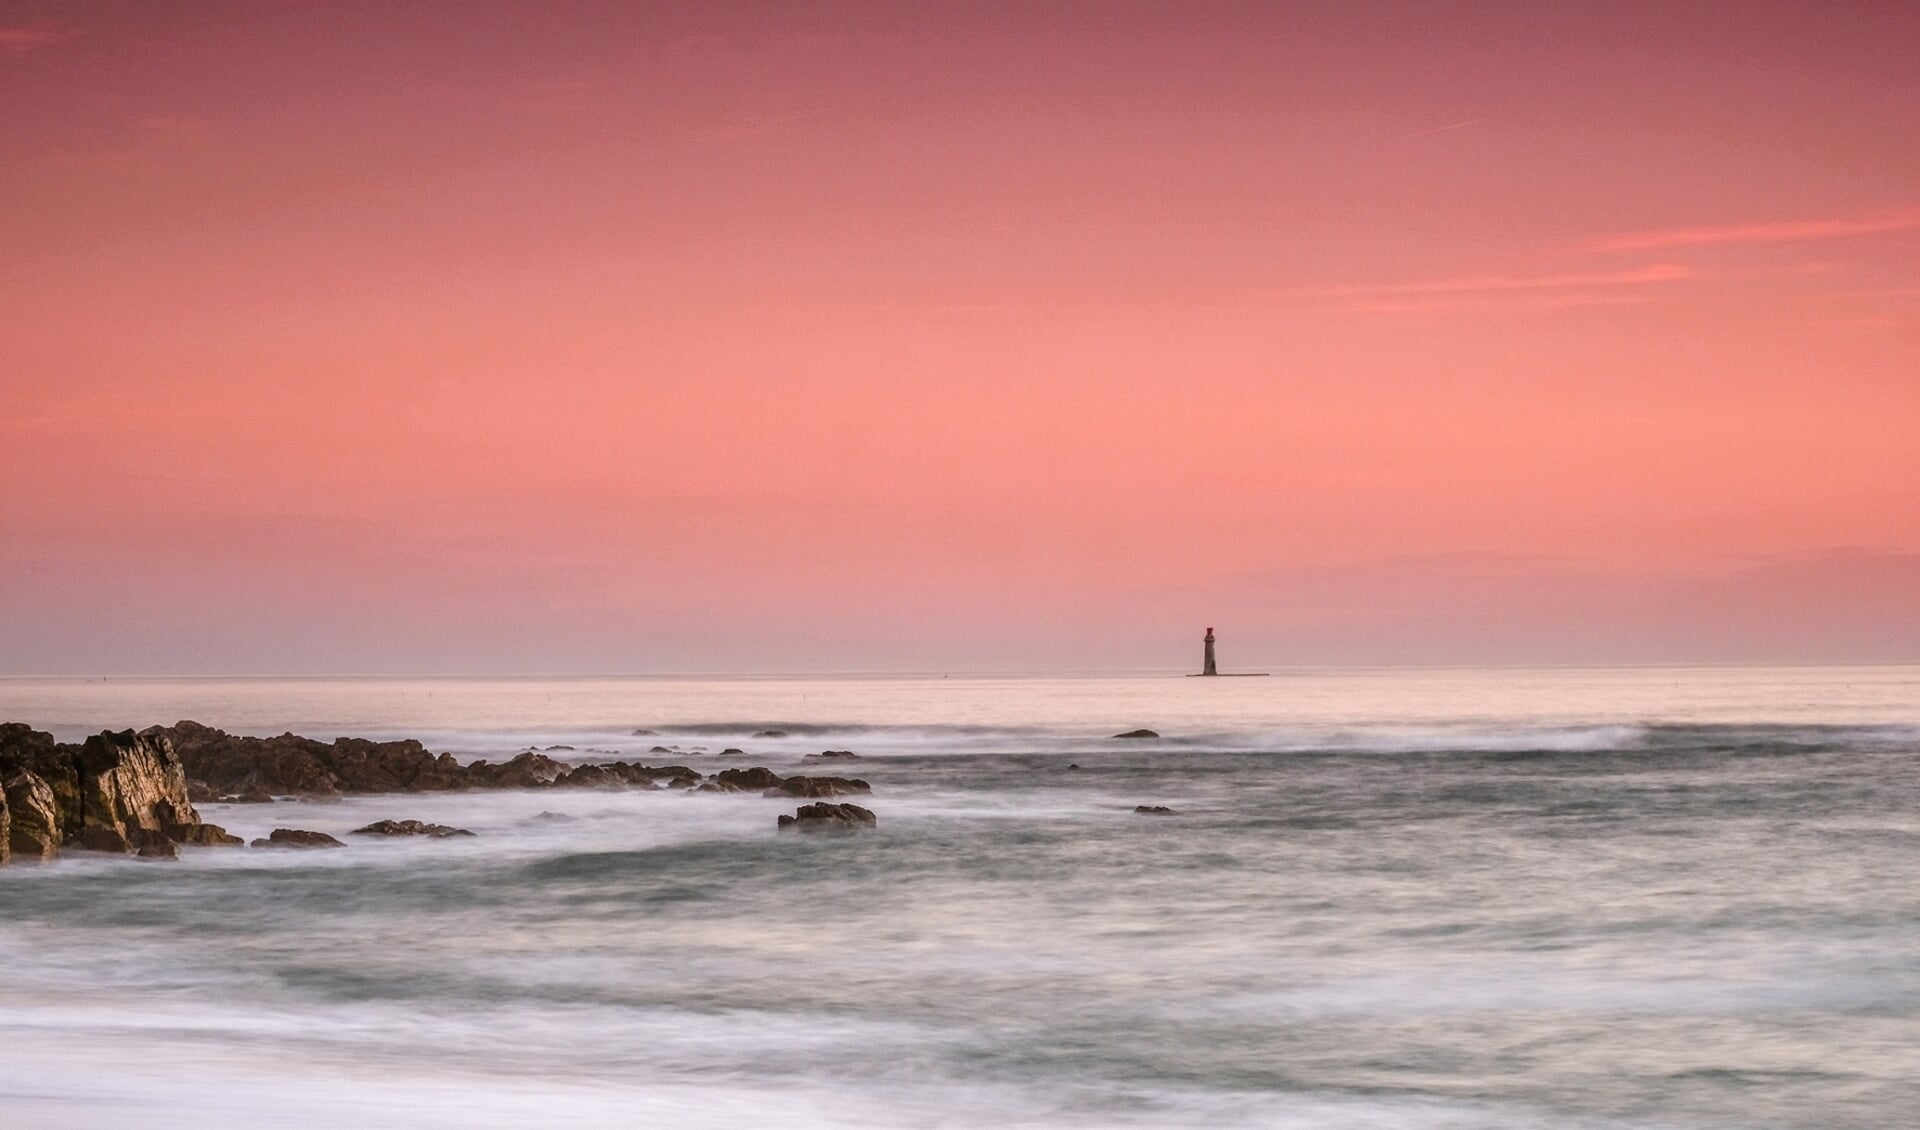 Rode kust, een foto van Jos Vermeij.